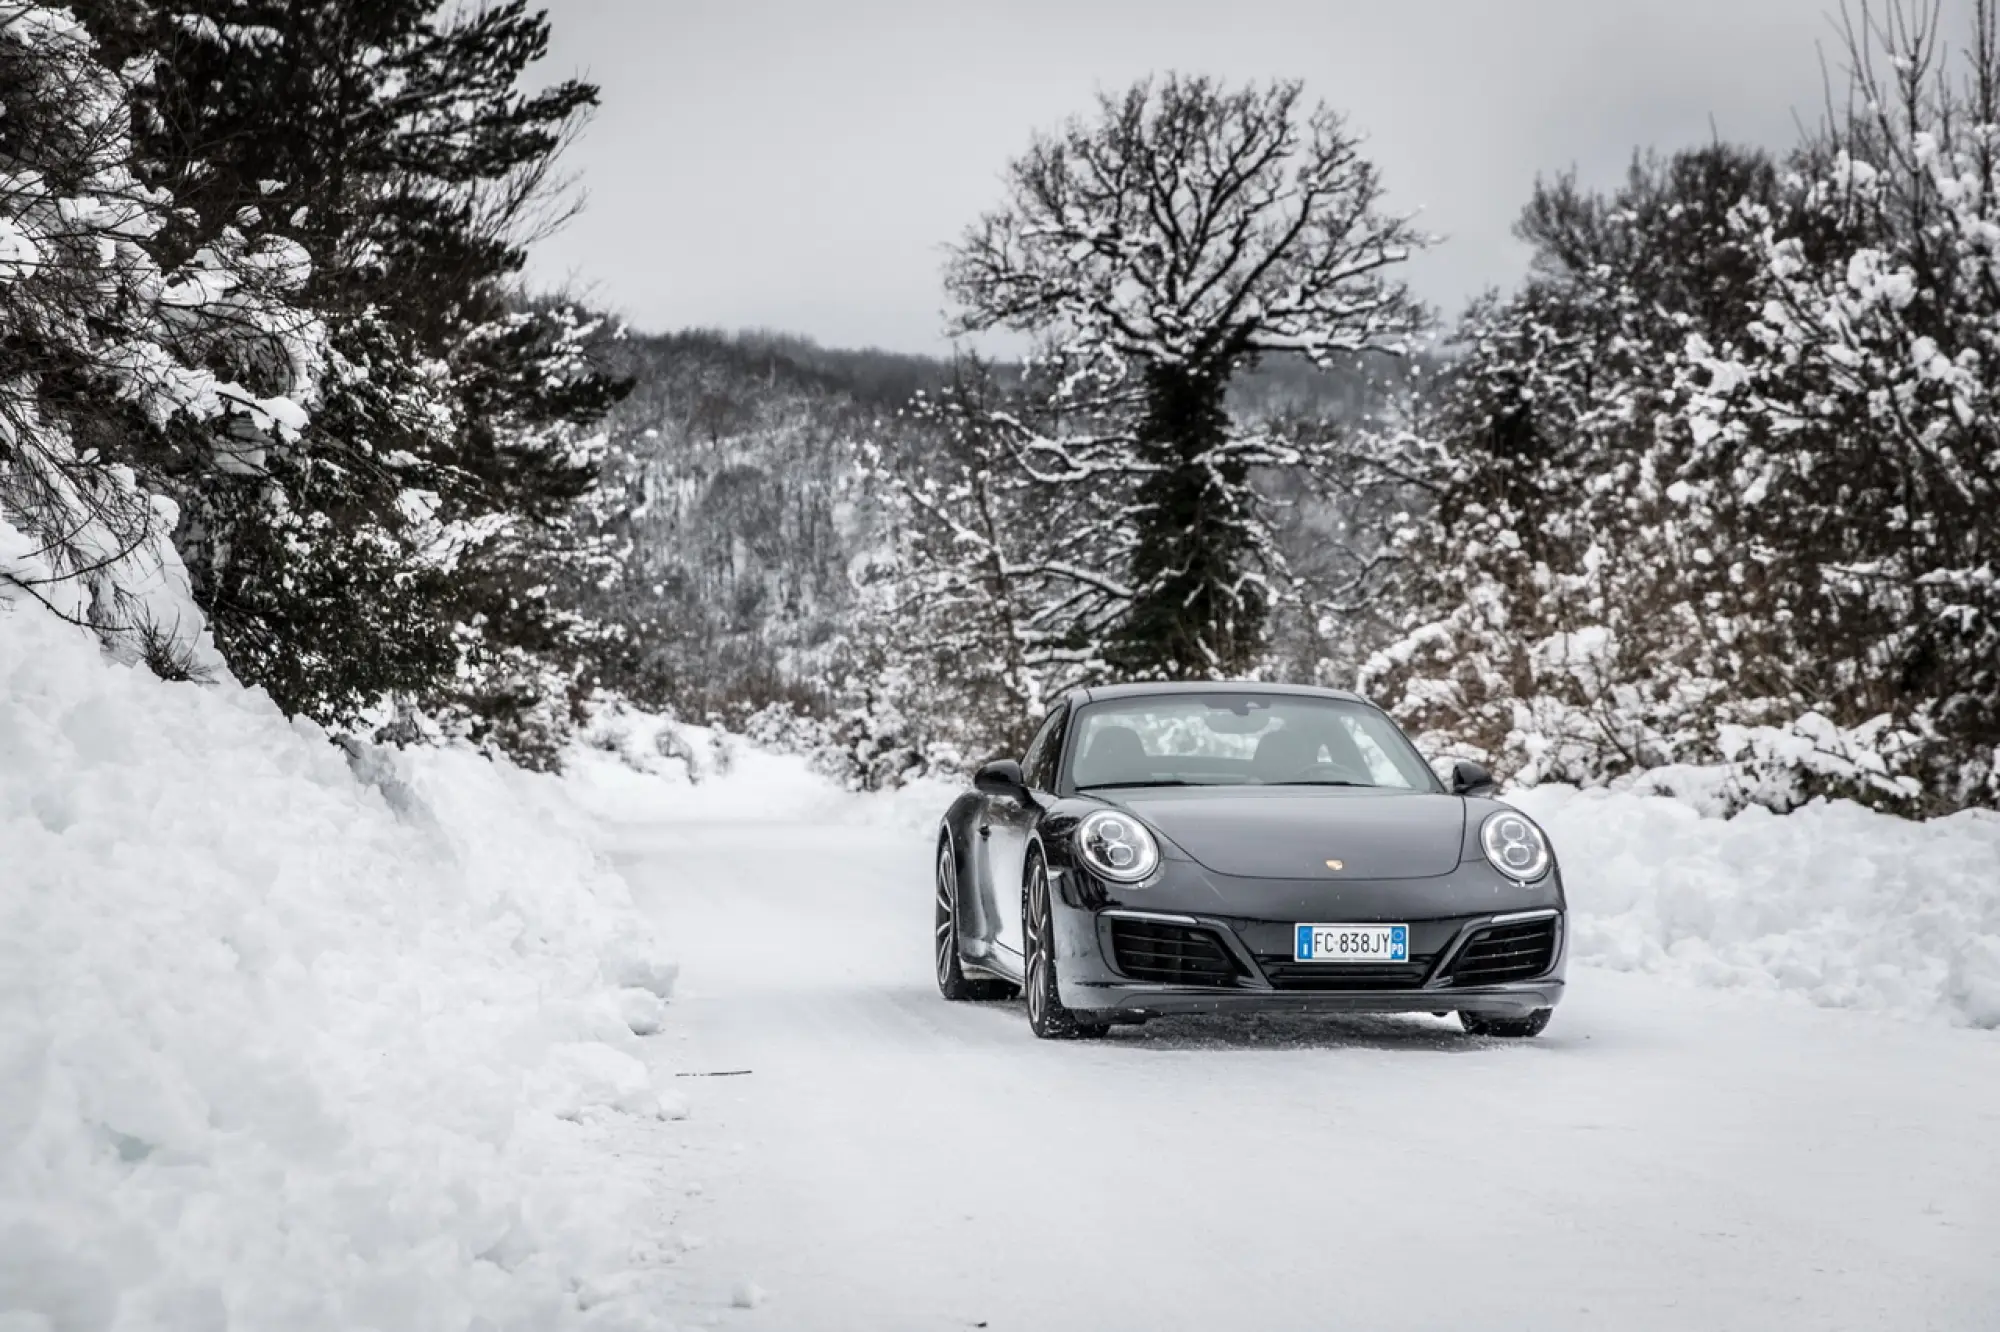 Itinerario Pirelli Porsche 911 inverno 2017 - 34